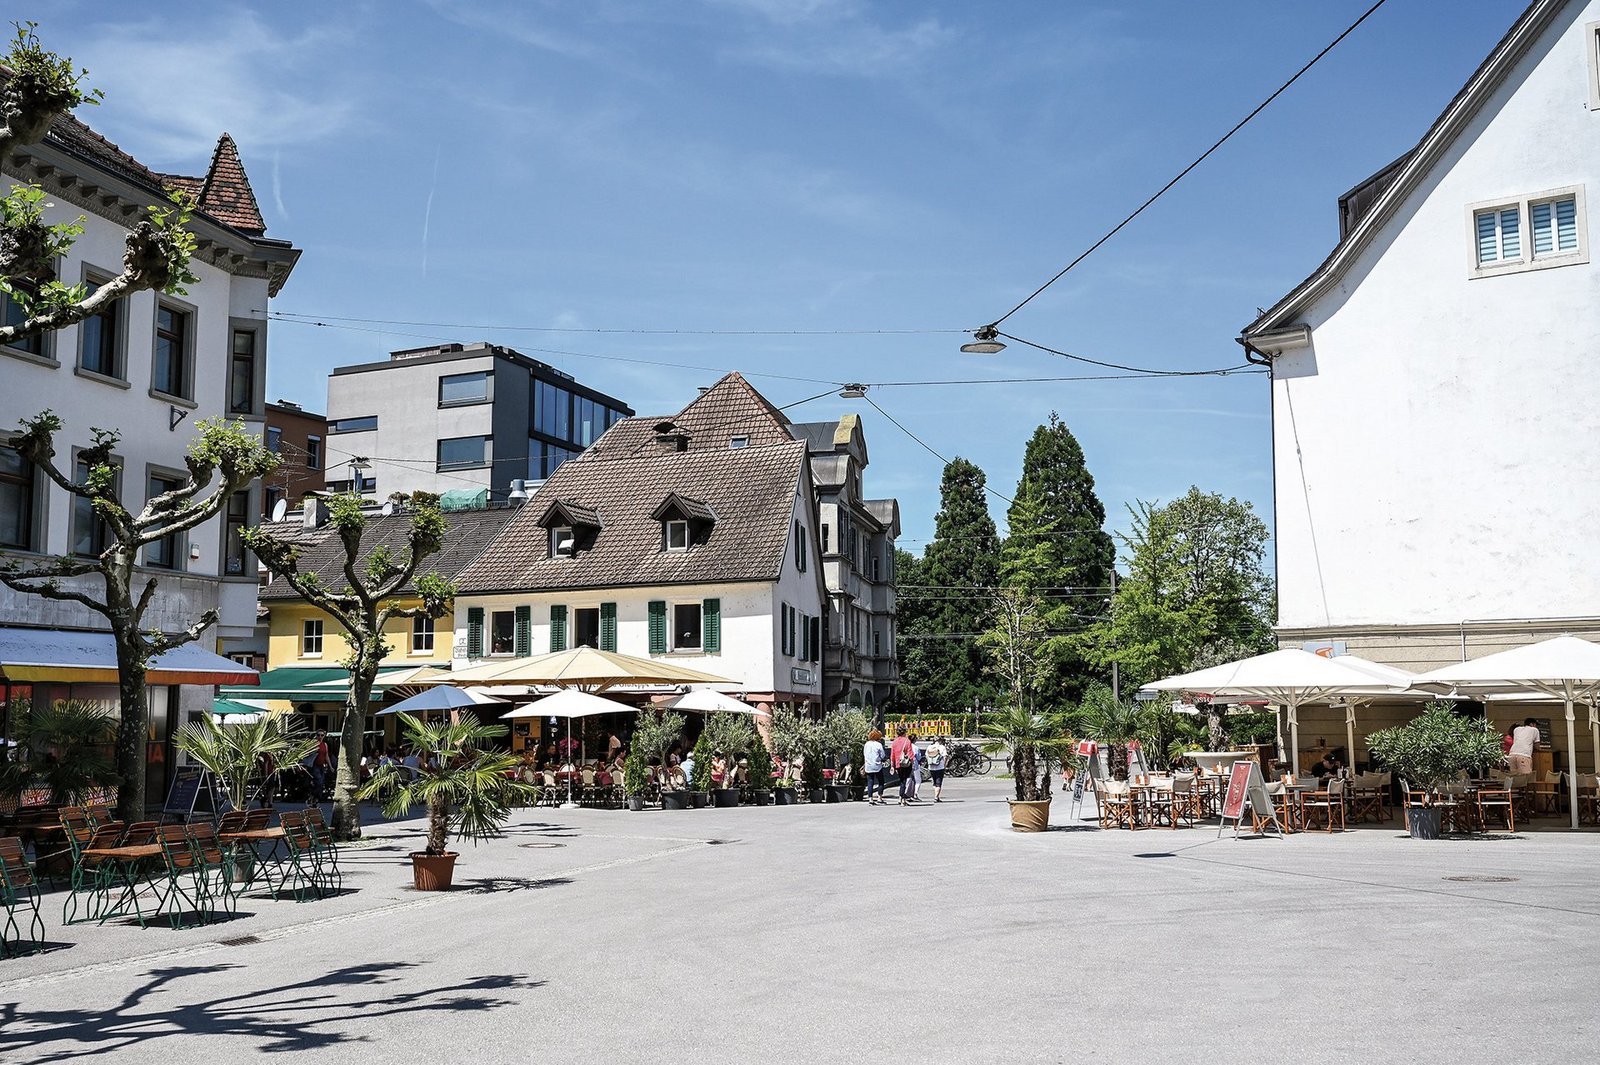 Blick auf den Sparkassenplatz in Bregenz, man sieht Häuser und Restaurants